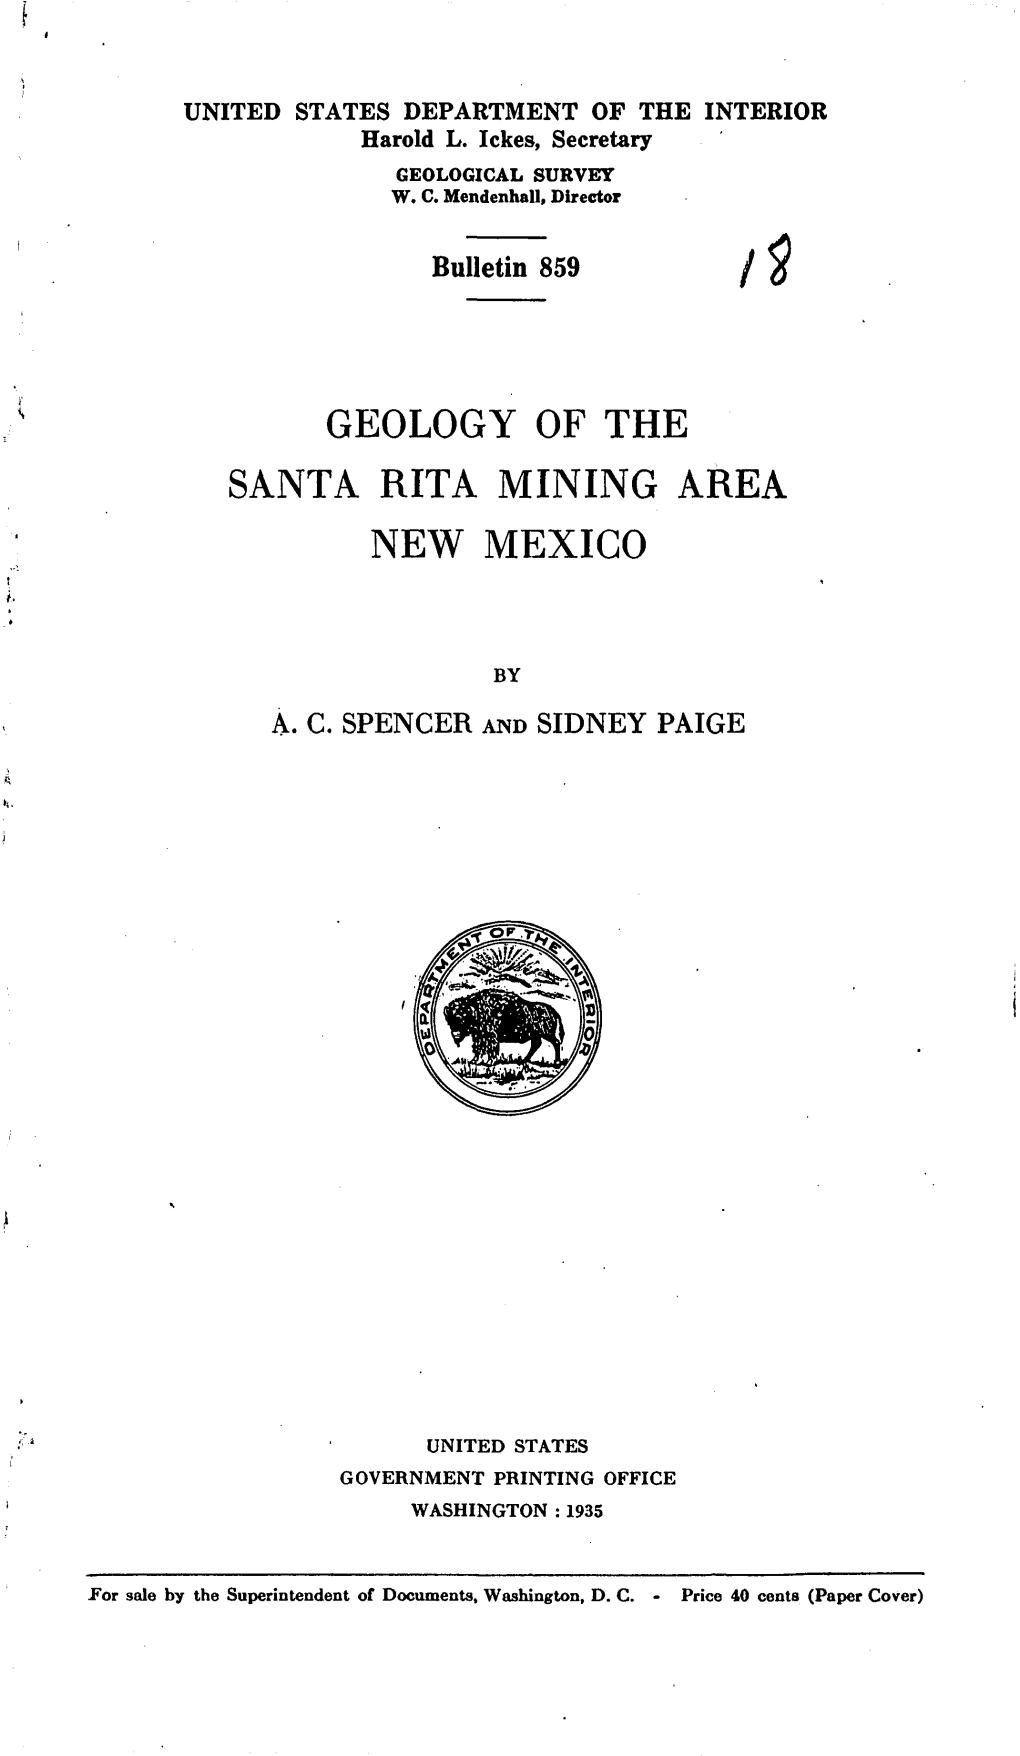 Santa Rita Mining Area New Mexico